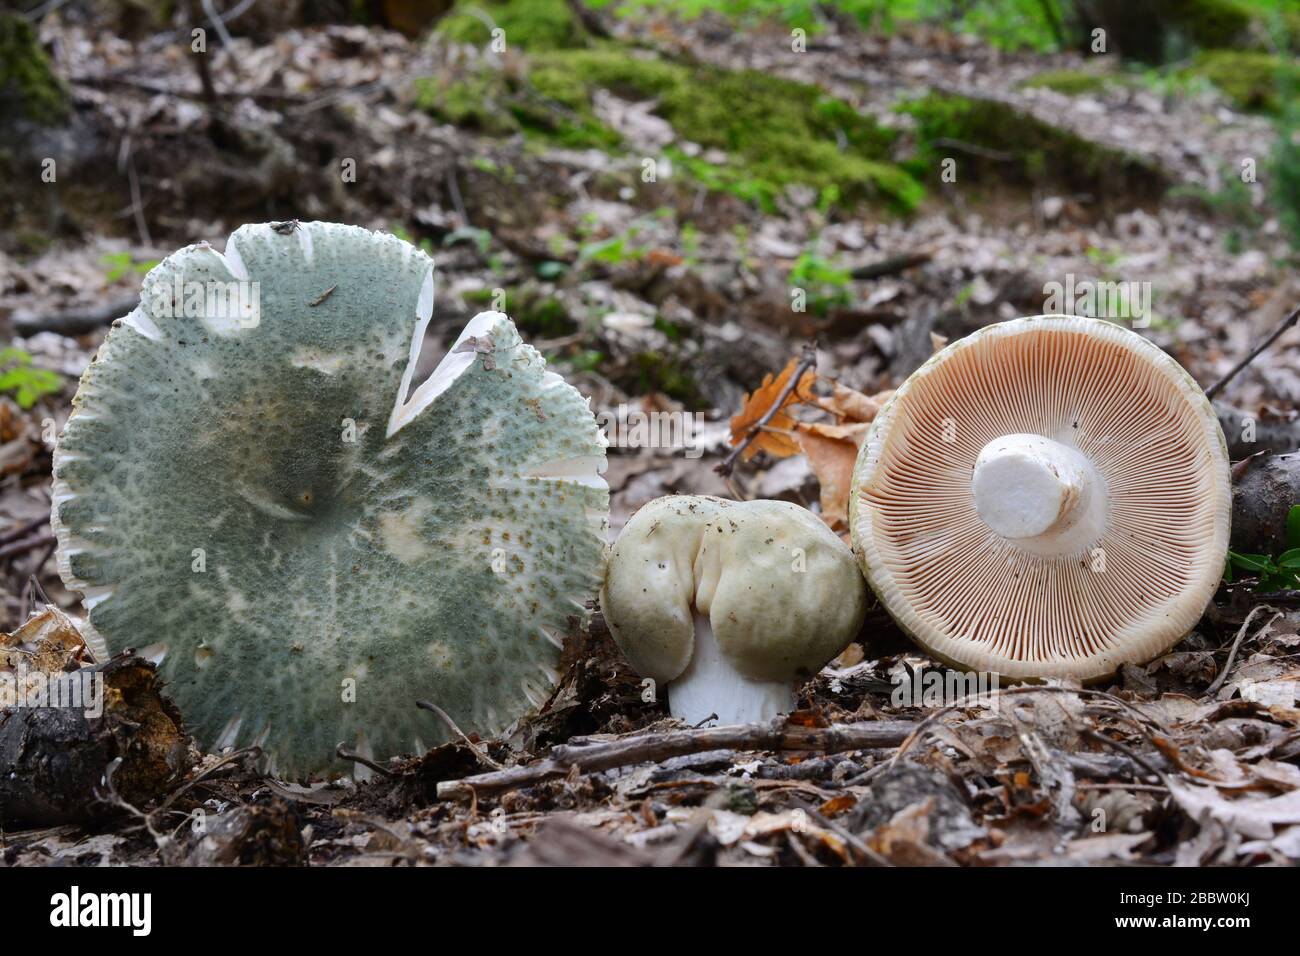 Drei Russula virescens oder Greencracked Brittlegill Champignons in natürlichen Lebensraum, Eiche Wald, in verschiedenen Entwicklungsstadien, alle Seiten sichtbar Stockfoto